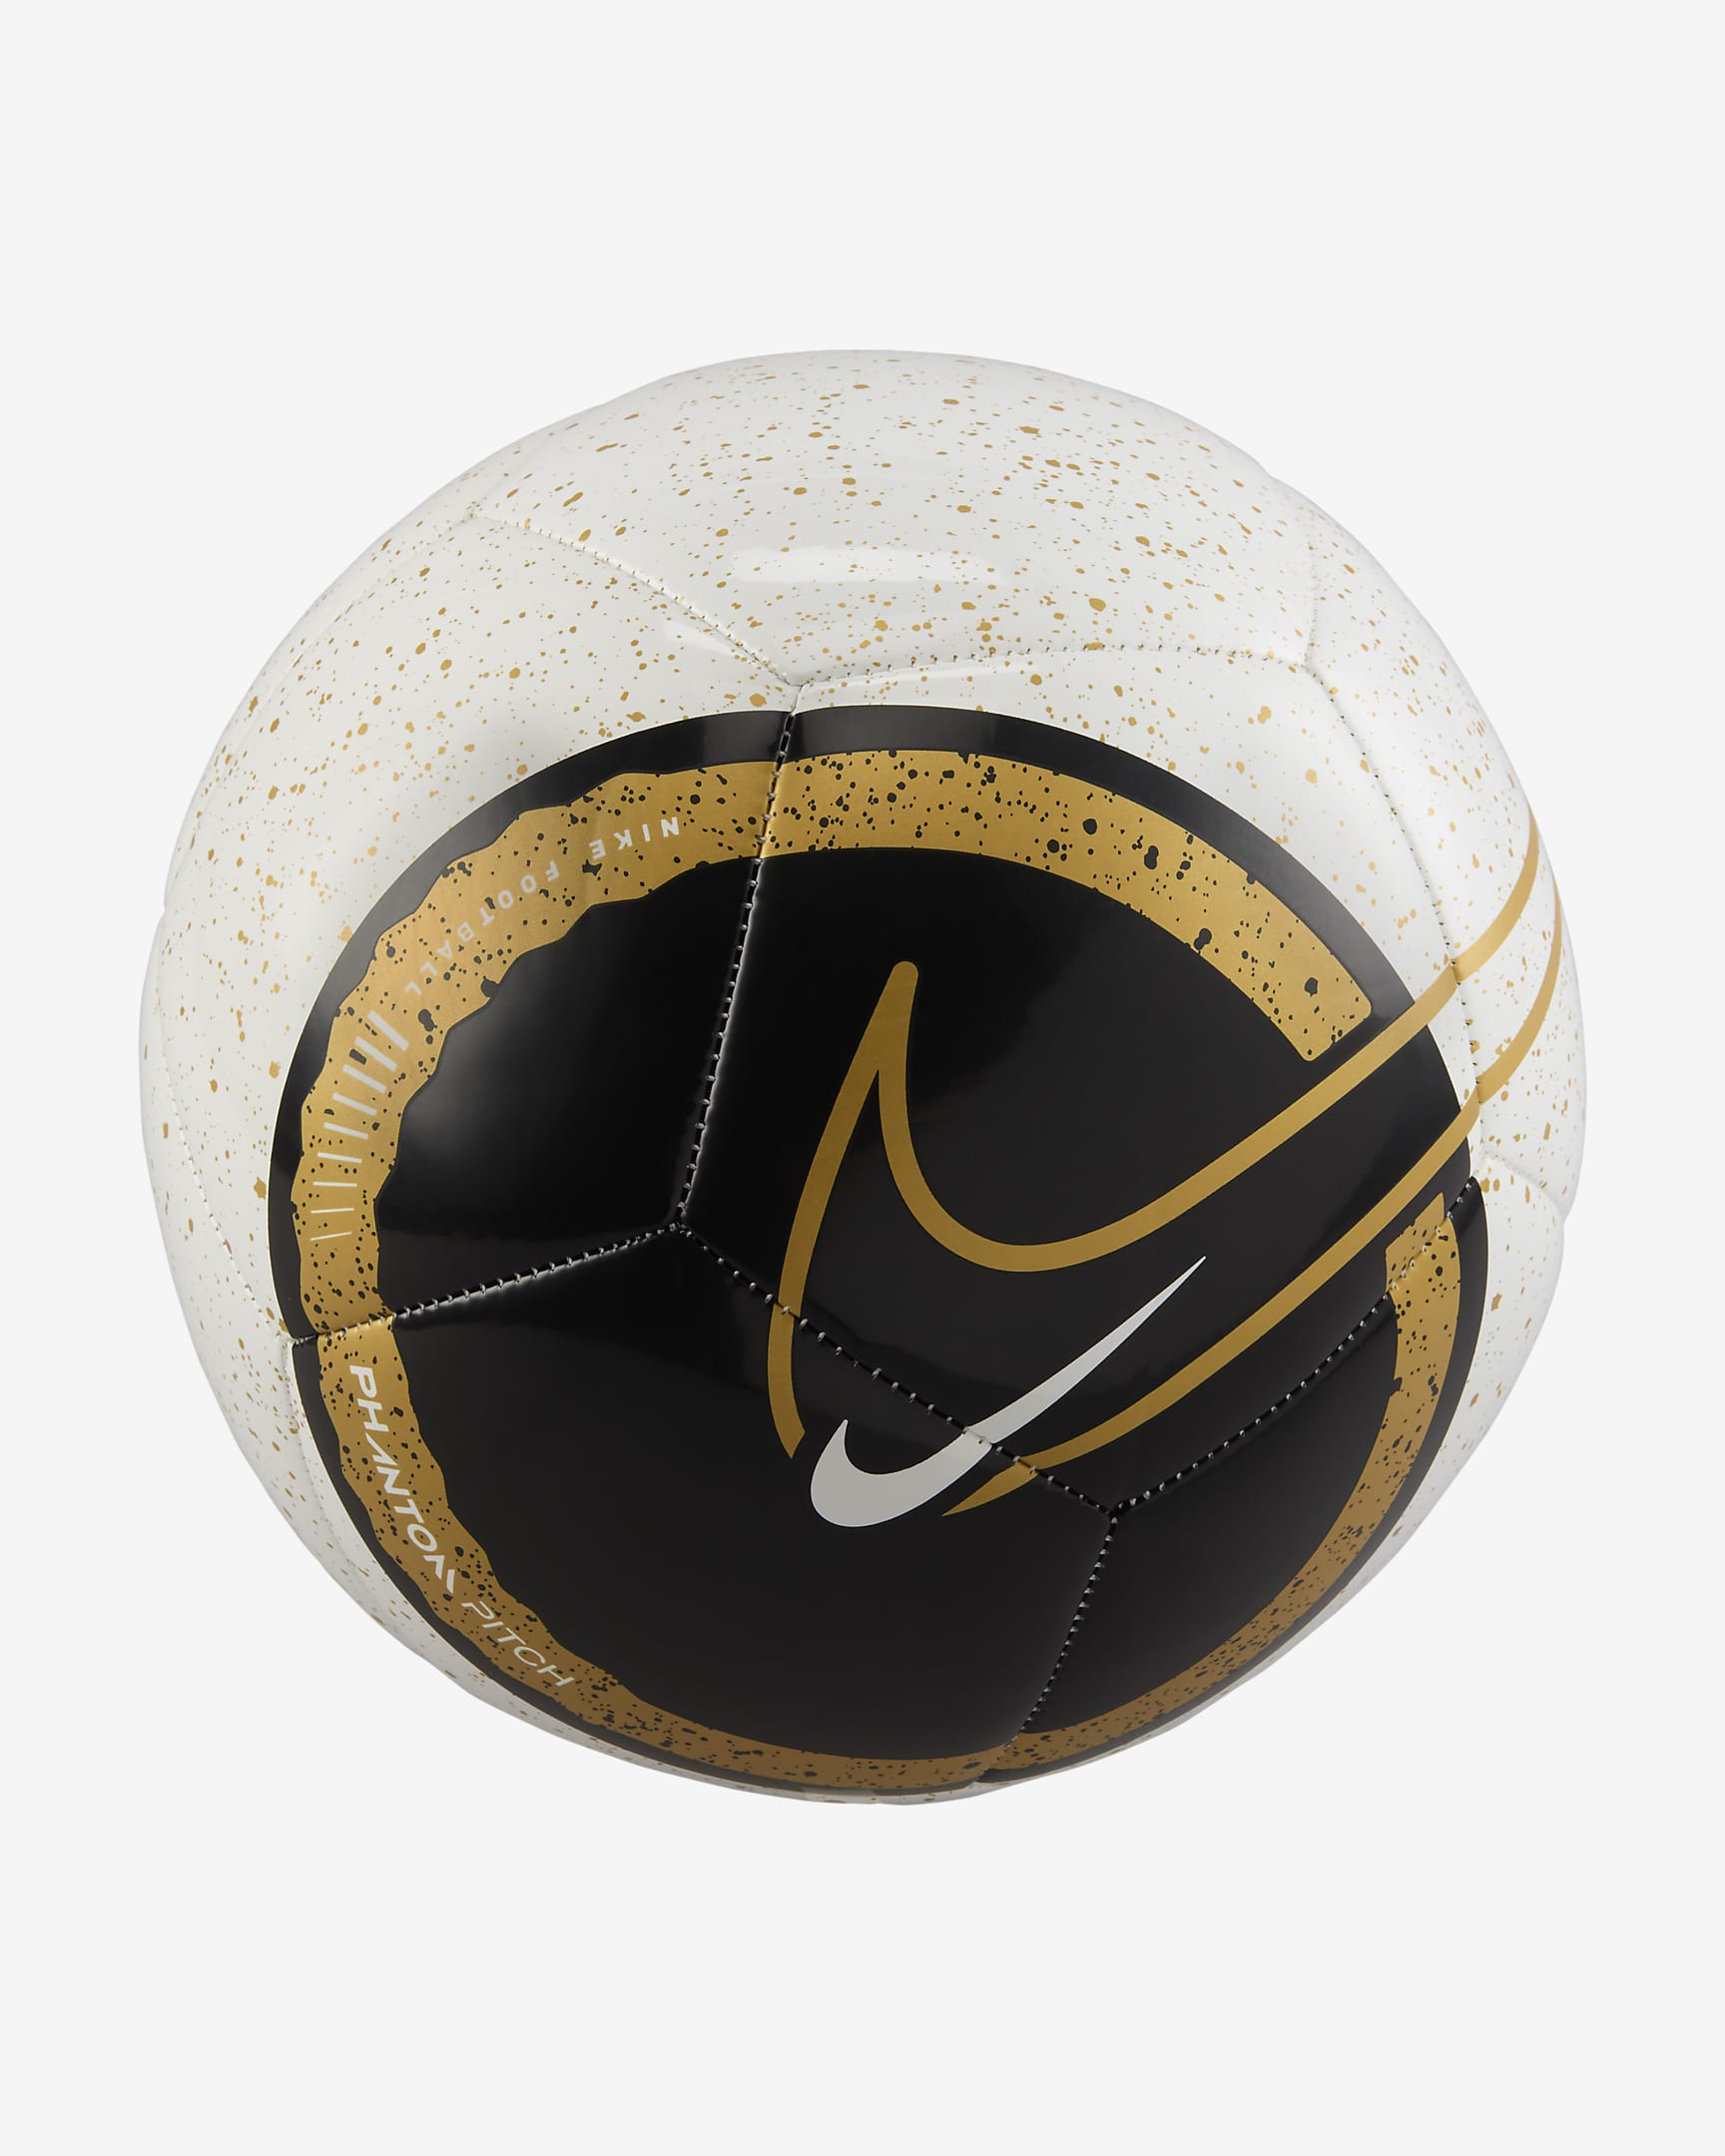 Nike Phantom Football - White/Black/Gold/Gold